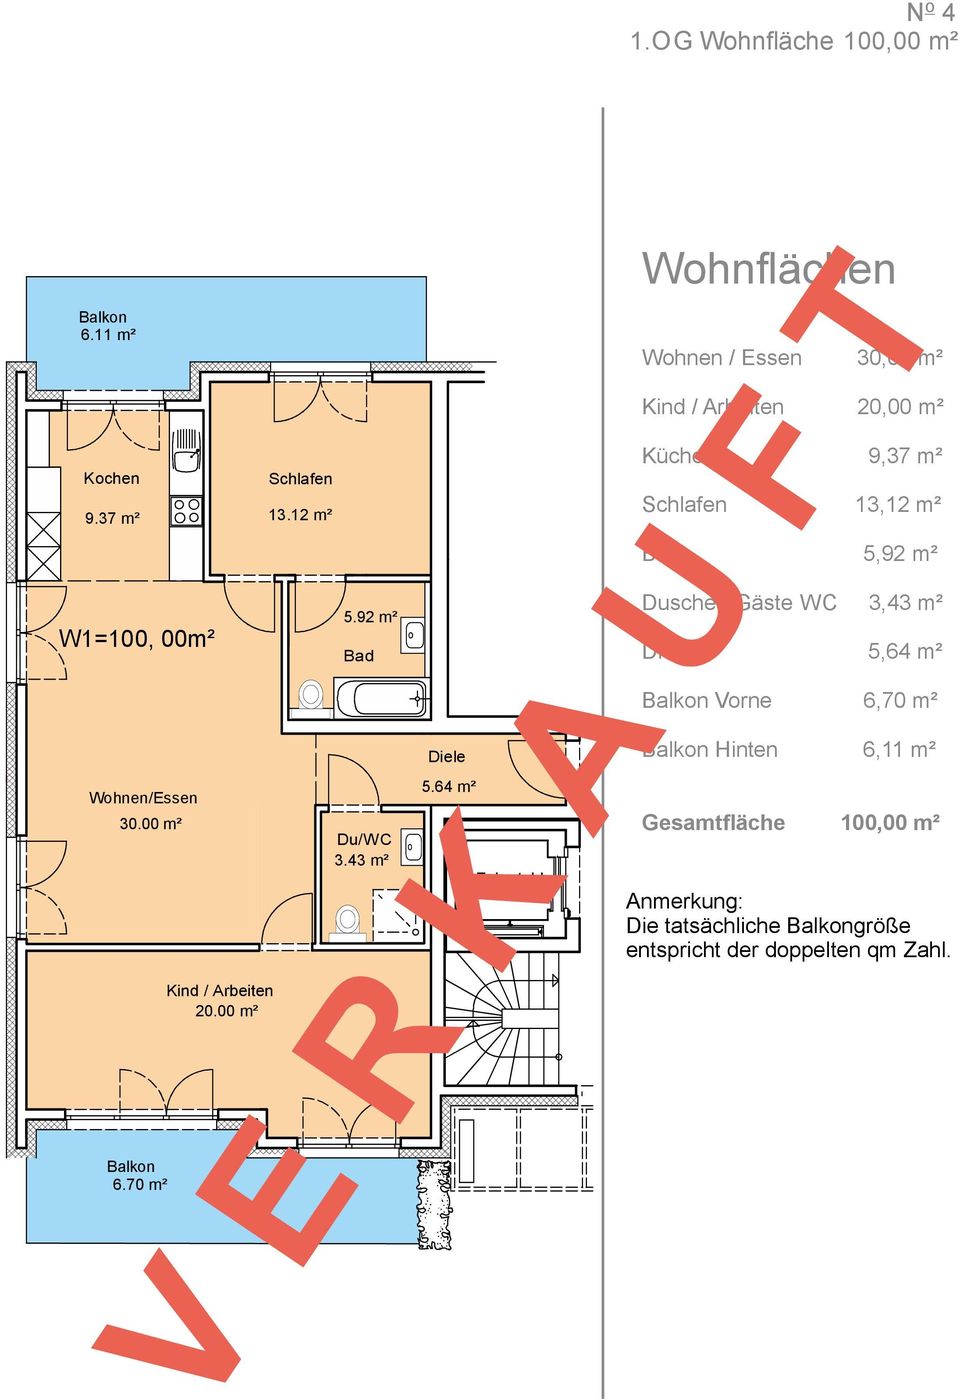 92 m² Bad Dusche / Gäste WC 3,43 m² Diele 5,64 m² Balkon Vorne 6,70 m² Diele Balkon Hinten 6,11 m² Wohnen/Essen 30.